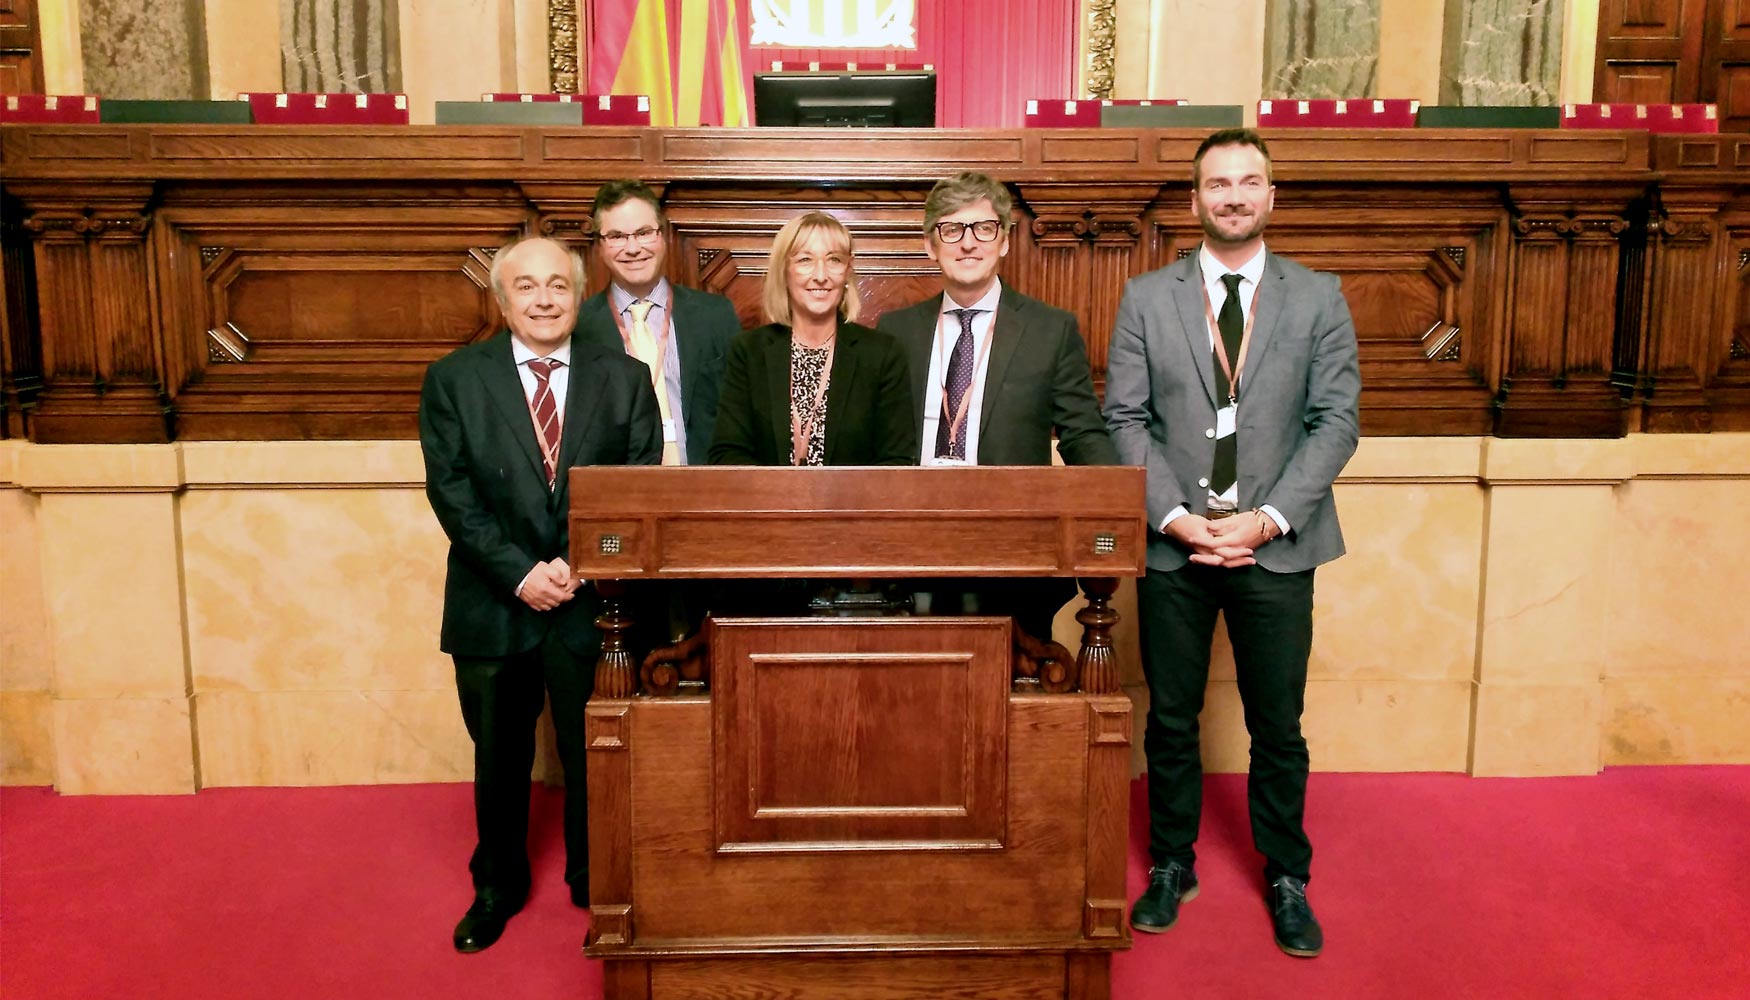 Aecork, Icsuro, Retecork en el Parlament de Catalunya